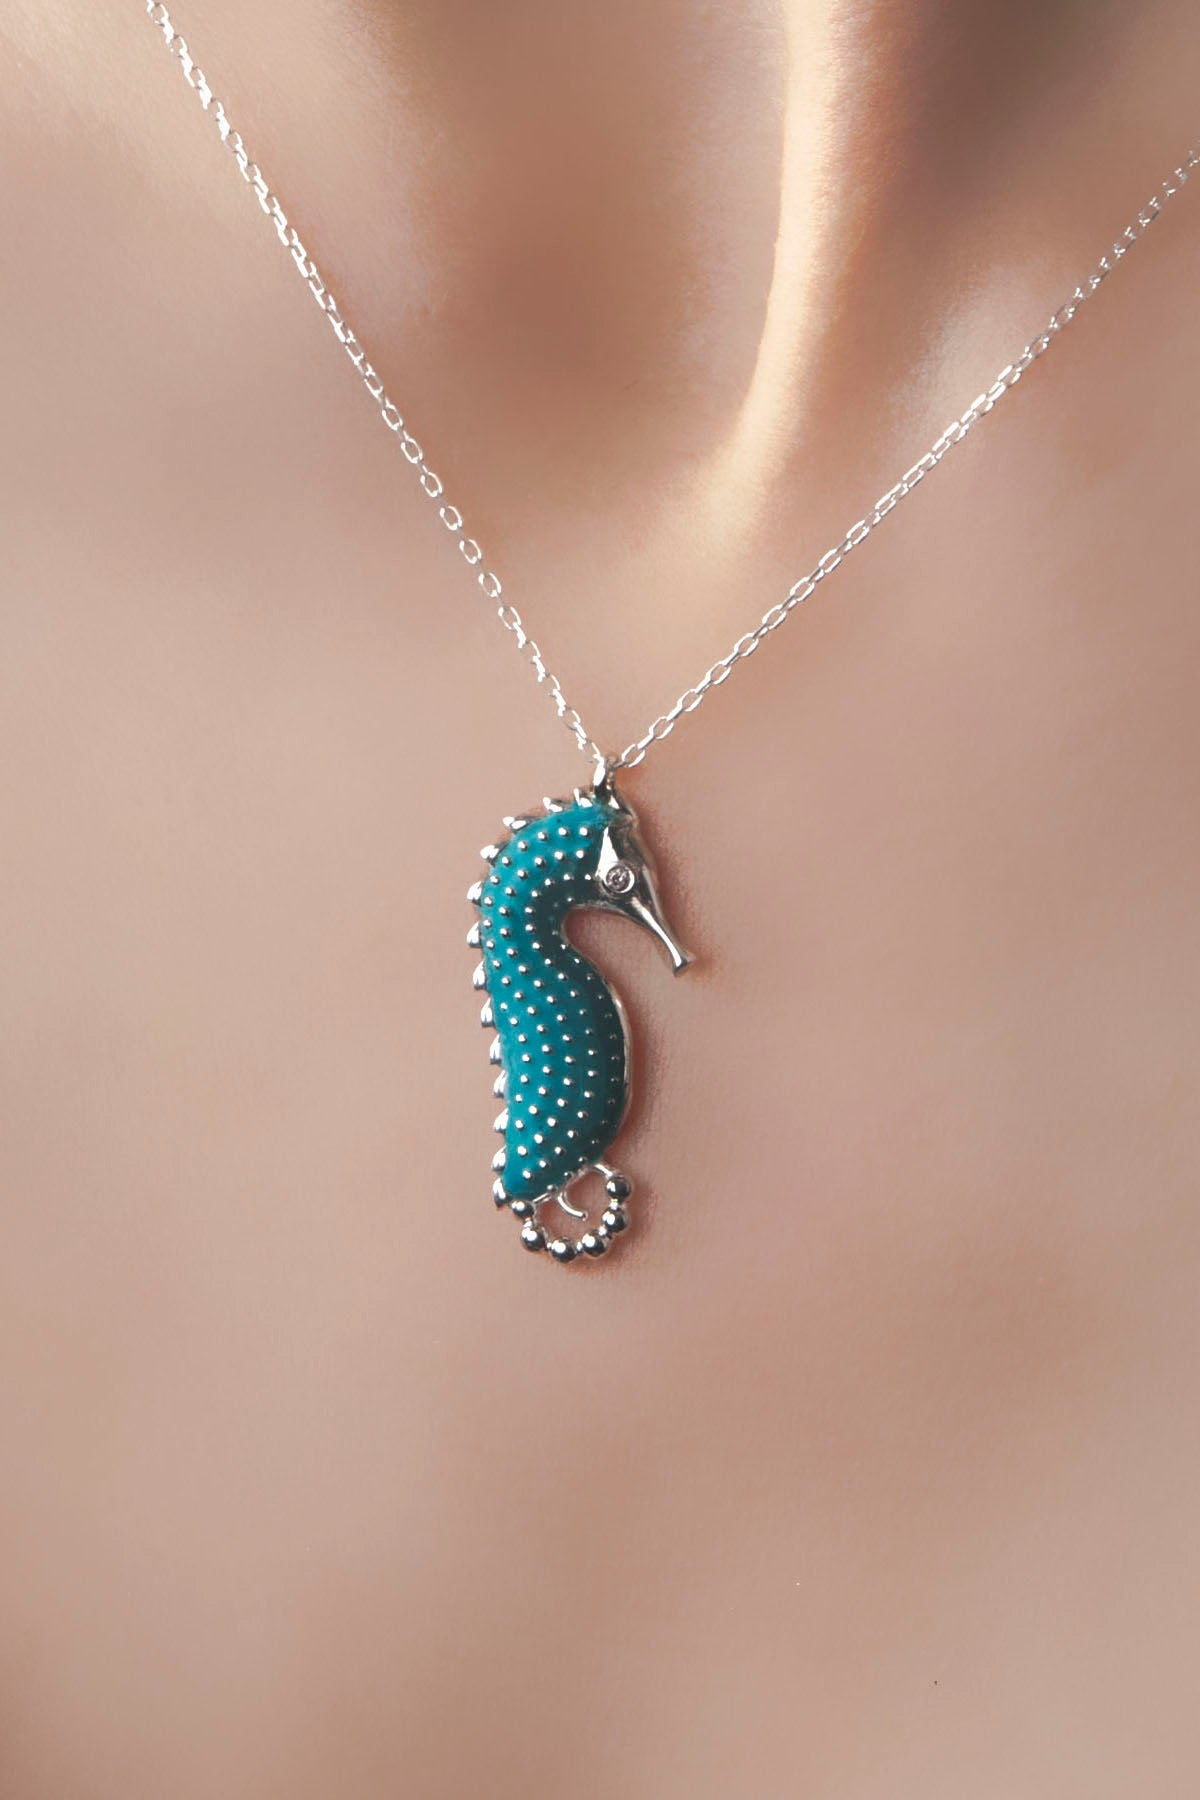 Silber Halskette mit buntem Seepferdchen-Anhänger